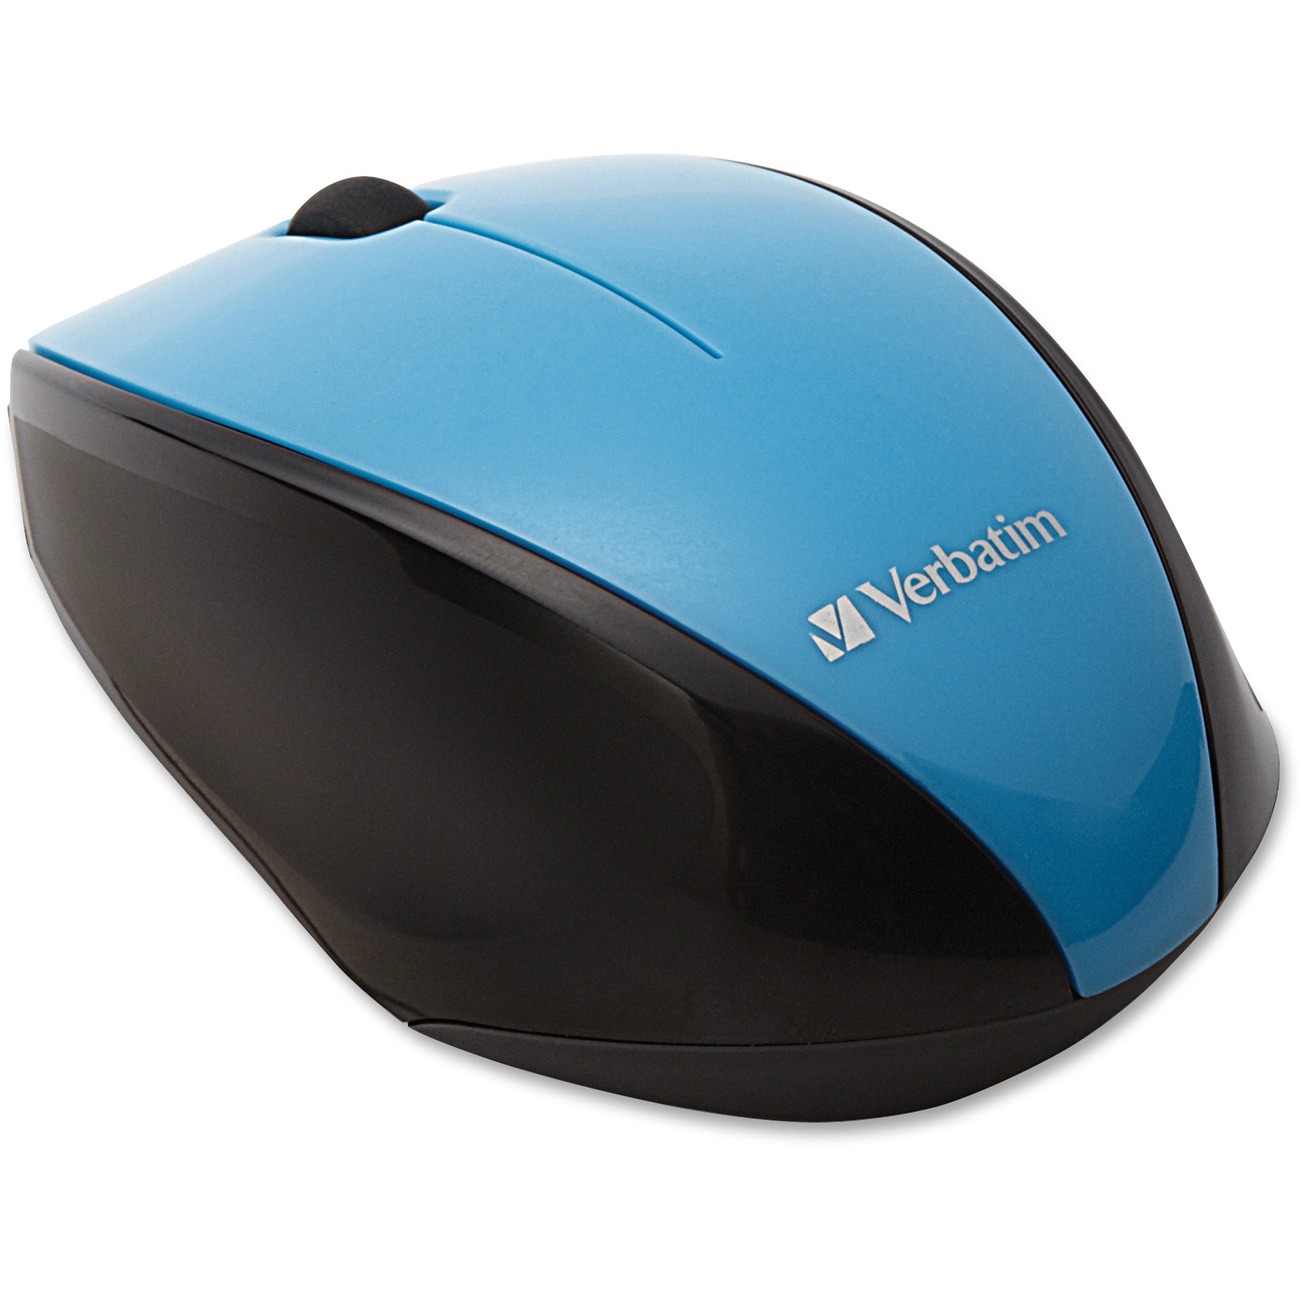 Беспроводная мышь синяя. Мышь Verbatim Wireless Multi-Trac Blue led Optical Mouse Purple USB. Мышка Cyan. Коврик для мышки Verbatim купить. Blue Mouse Aero Restaurant.